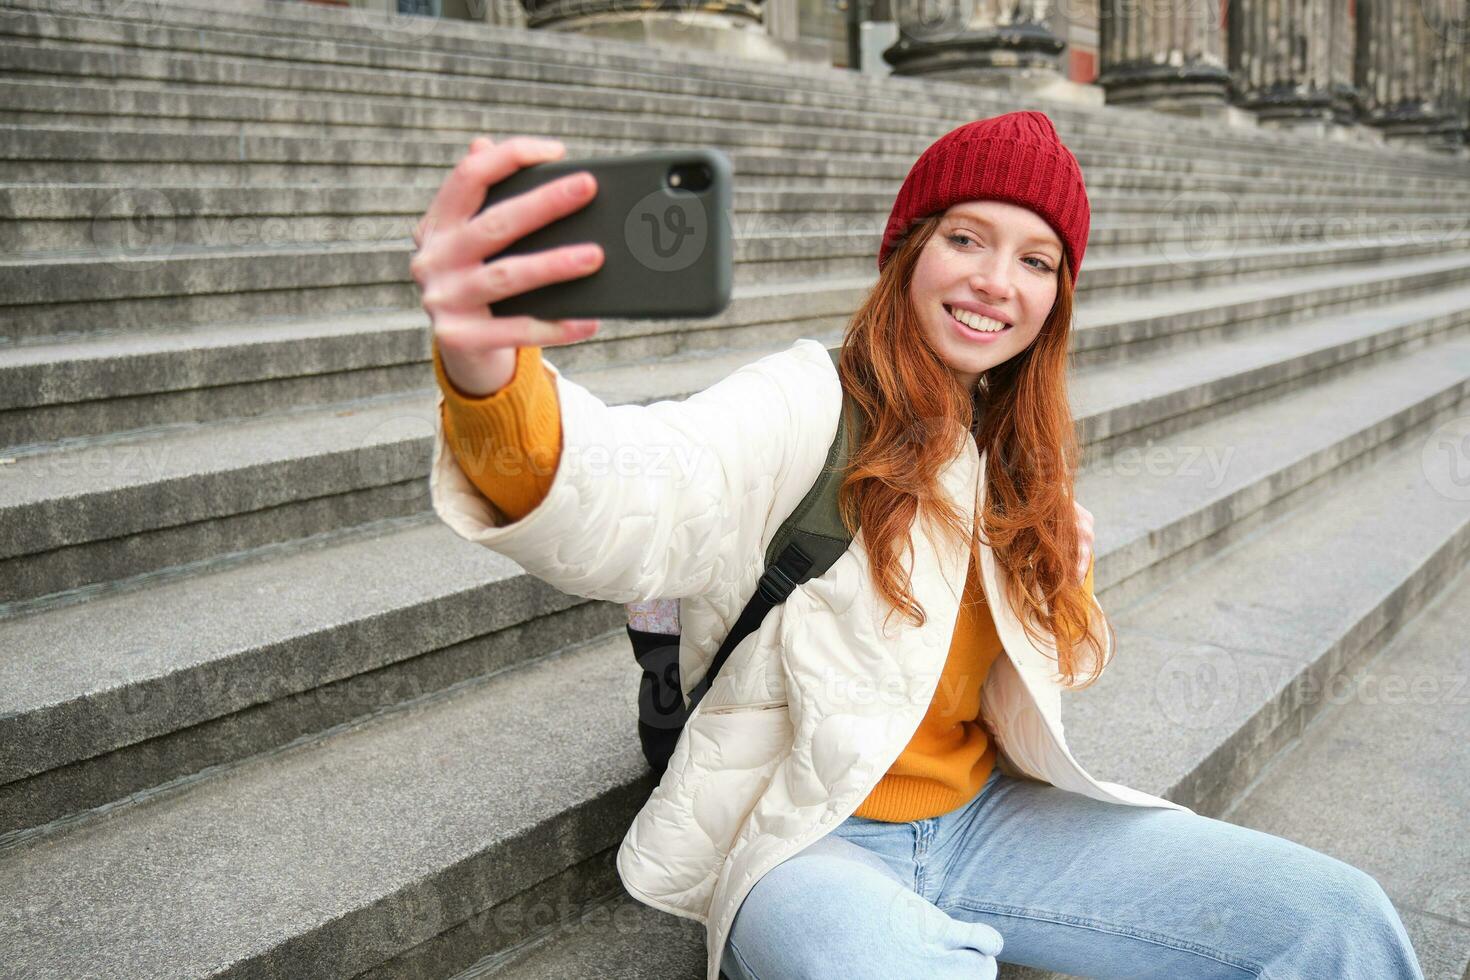 ung rödhårig turist tar selfie i främre av museum på trappa, innehar smartphone och utseende på mobil kamera, gör Foto av själv med telefon